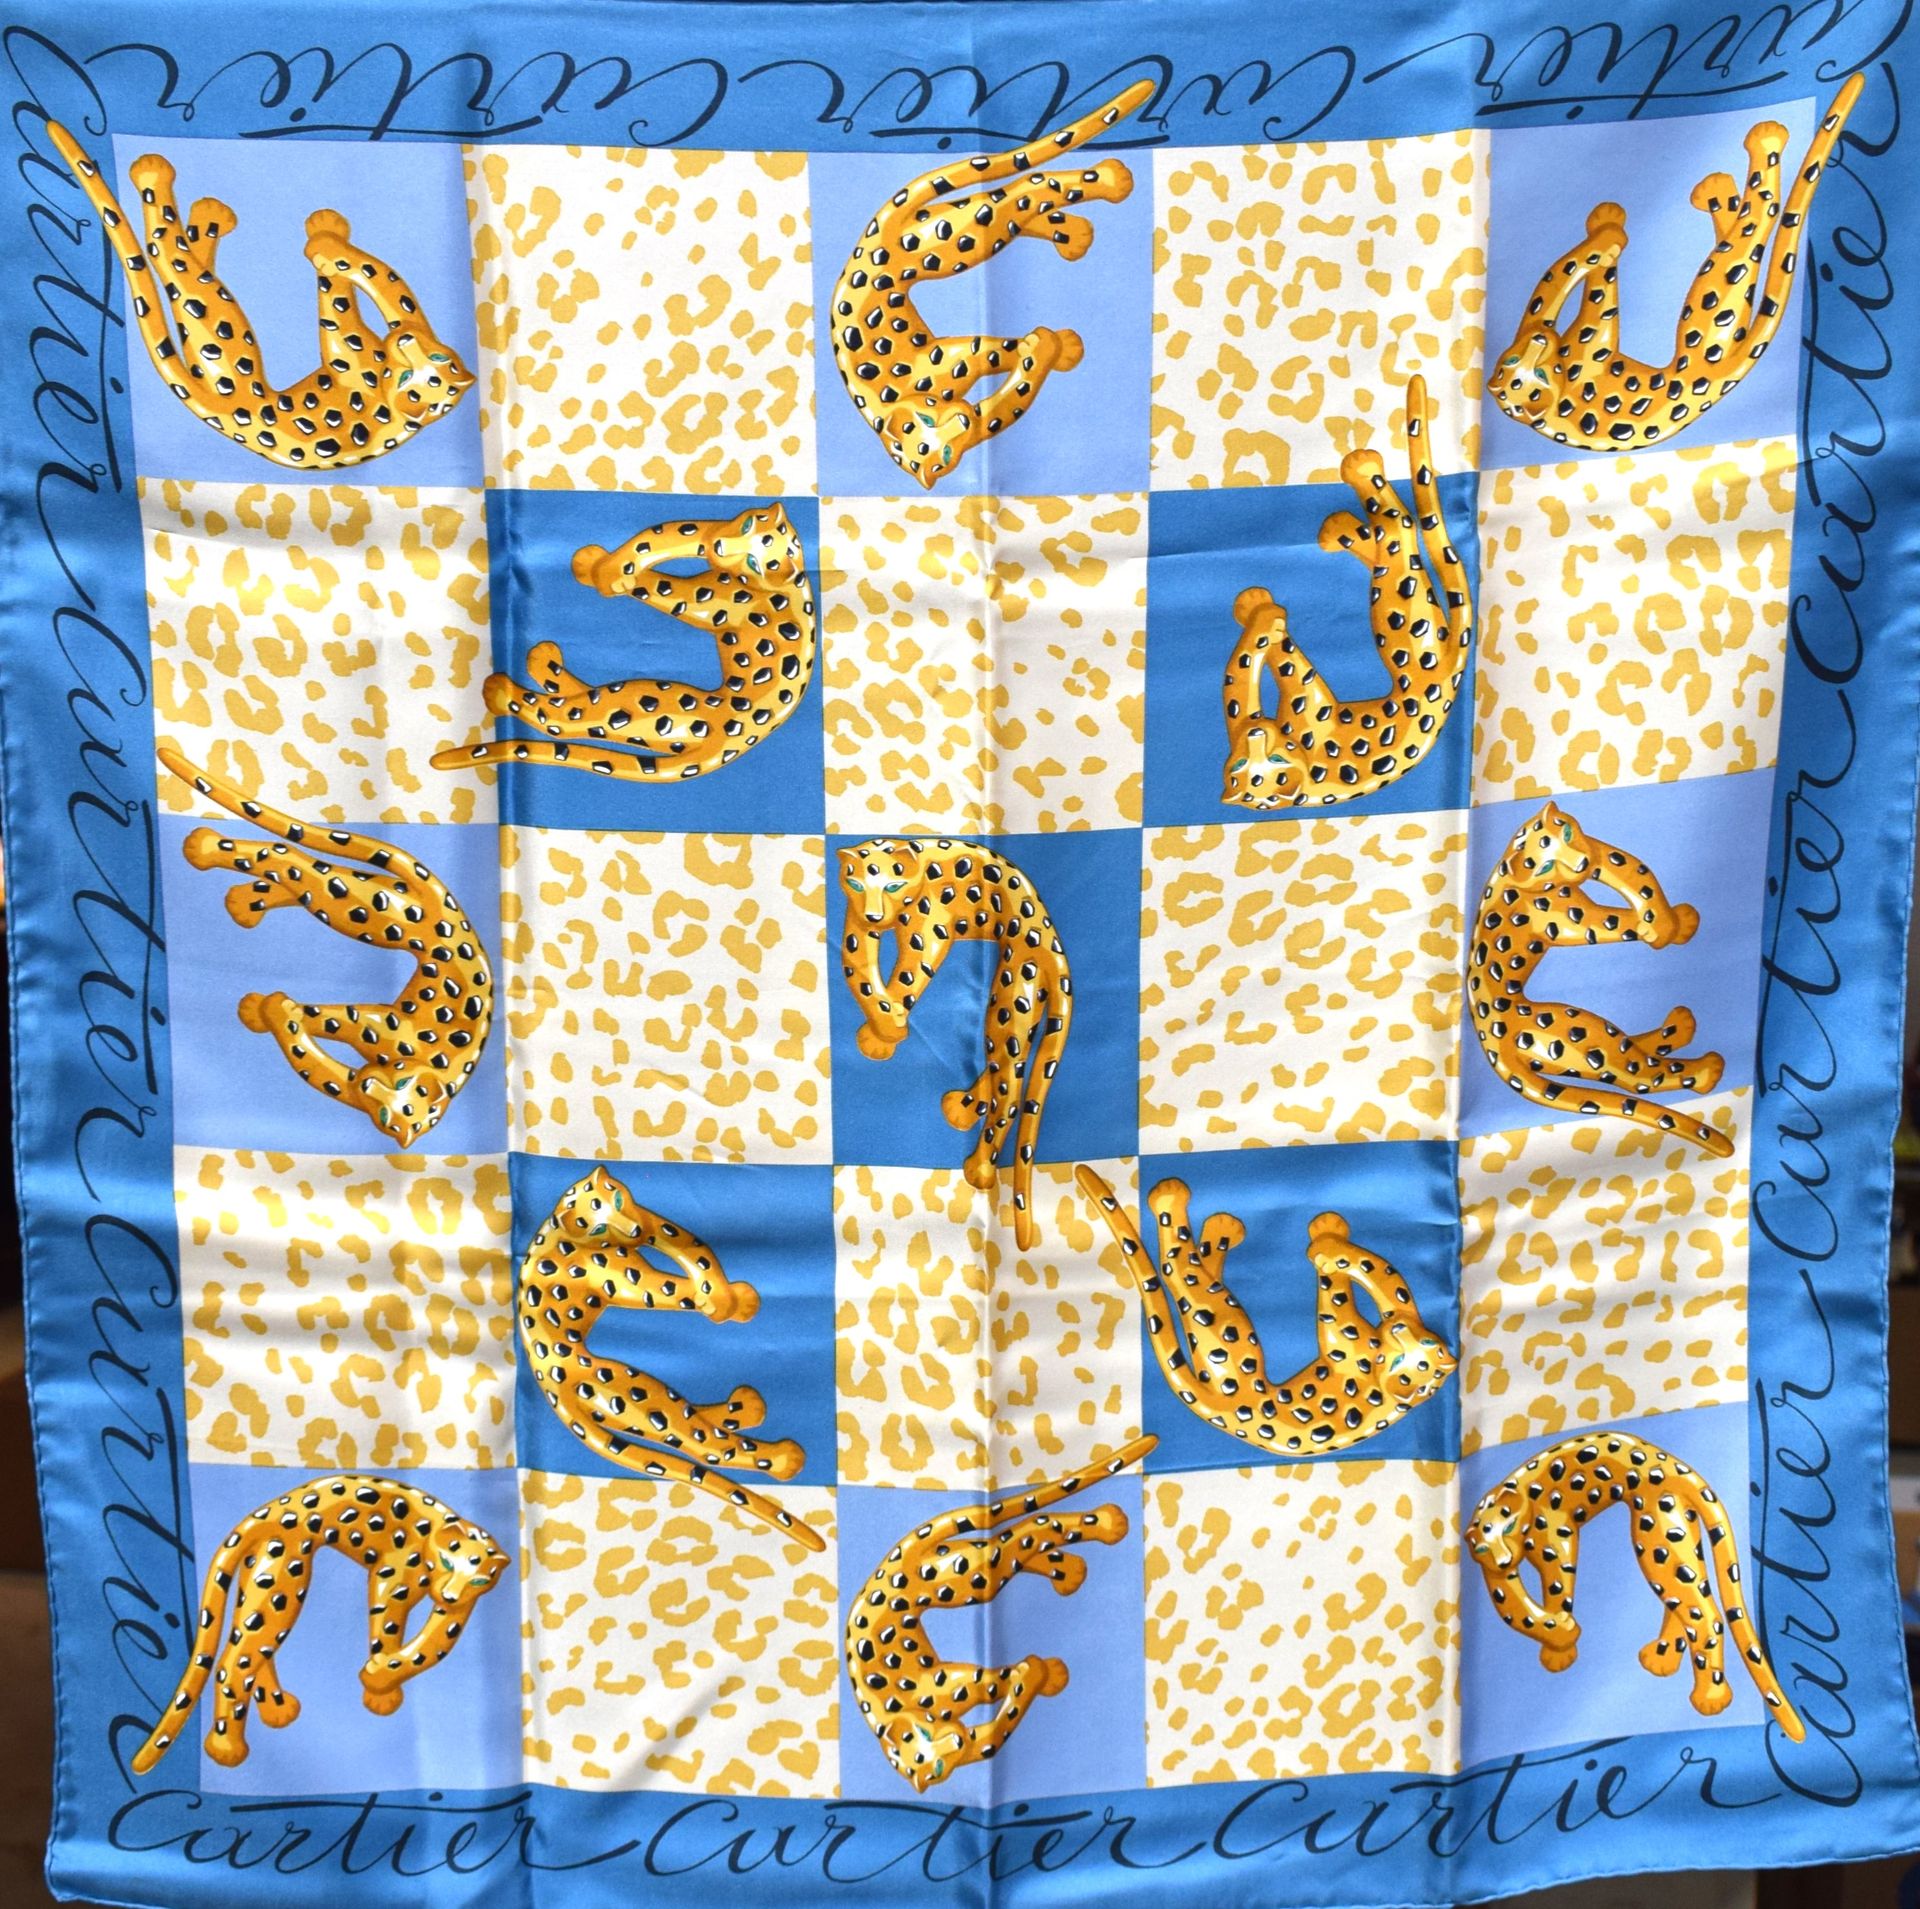 Null CARTIERE
Sciarpa blu Panthers
Quadrato in seta
67 x 68 cm
Scatola, carta di&hellip;